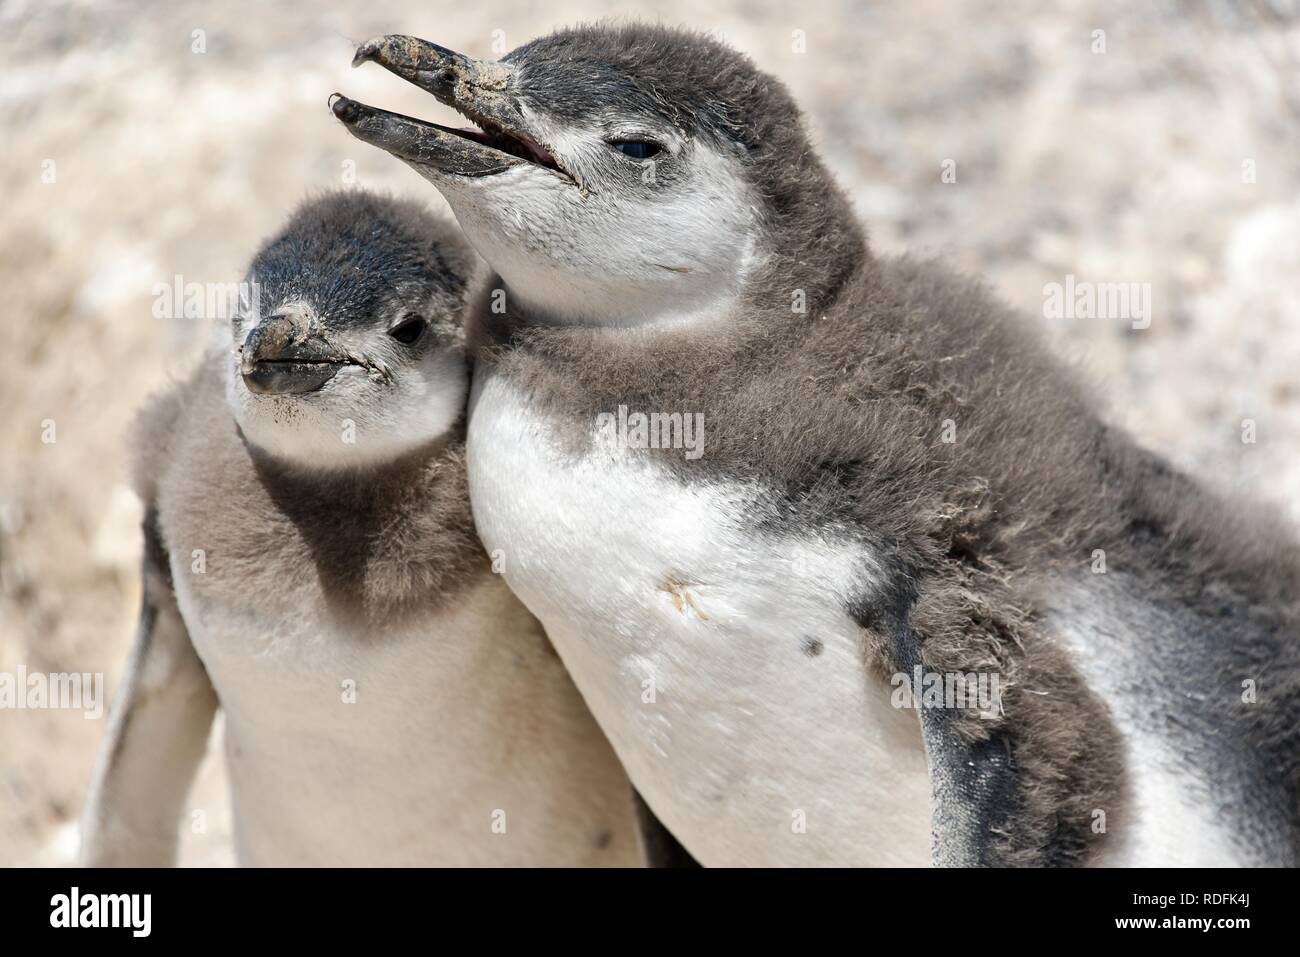 Pingüinos de Magallanes (Spheniscus magellanicus), los animales jóvenes, la colonia de pingüinos de Punta Tombo cerca Pininsula Valdez, Patagonia Foto de stock